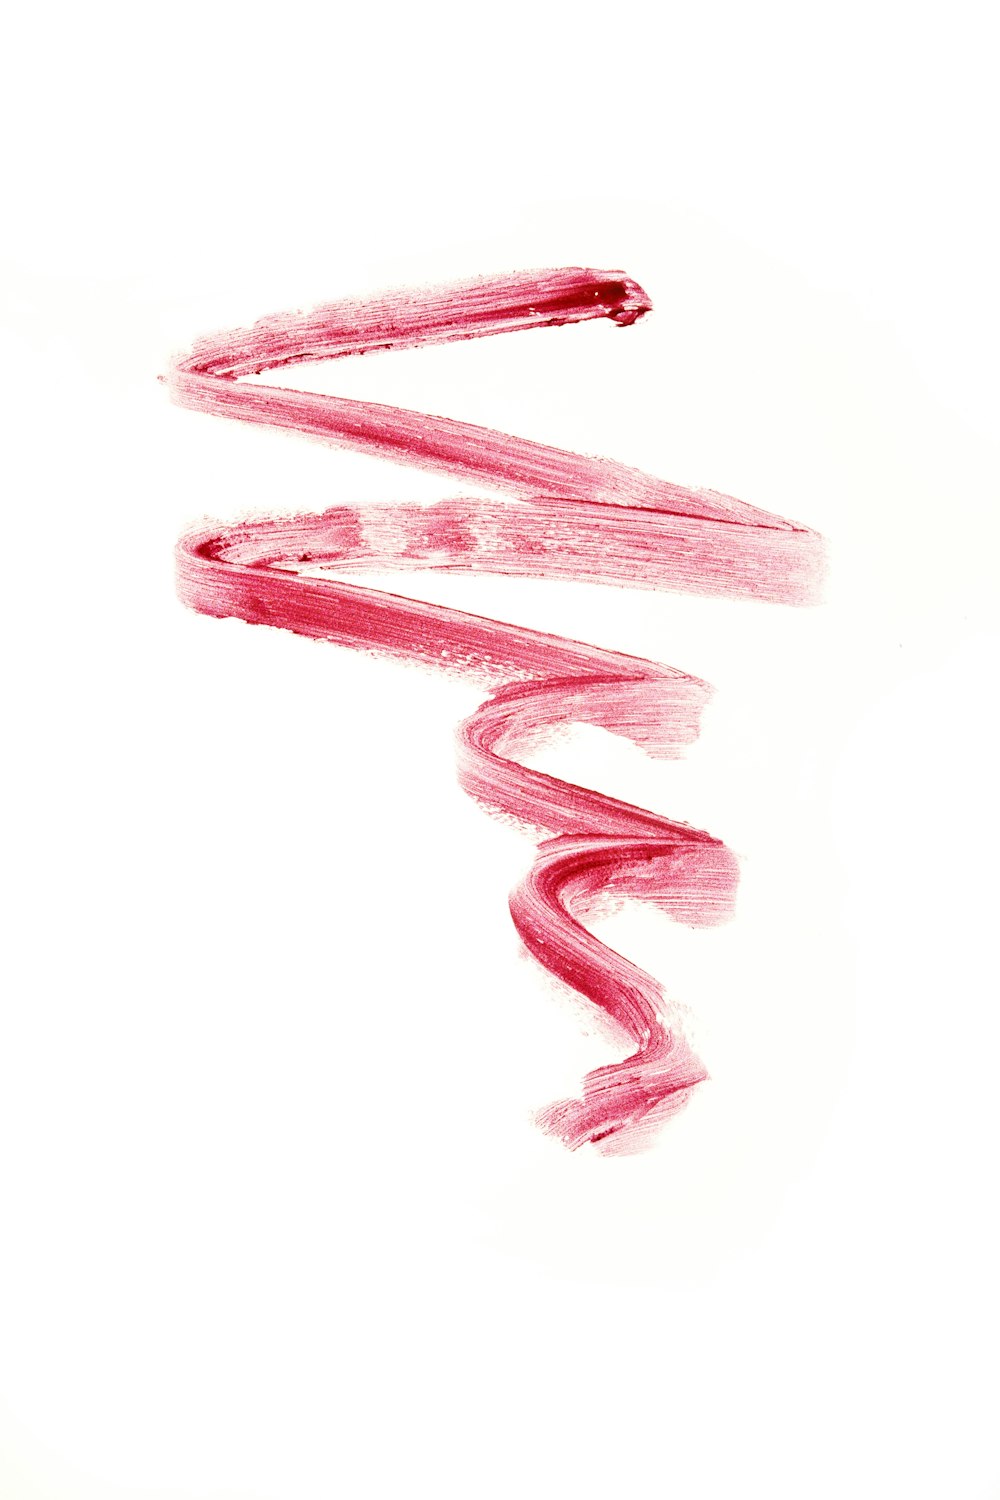 Un dibujo de una espiral roja sobre un fondo blanco